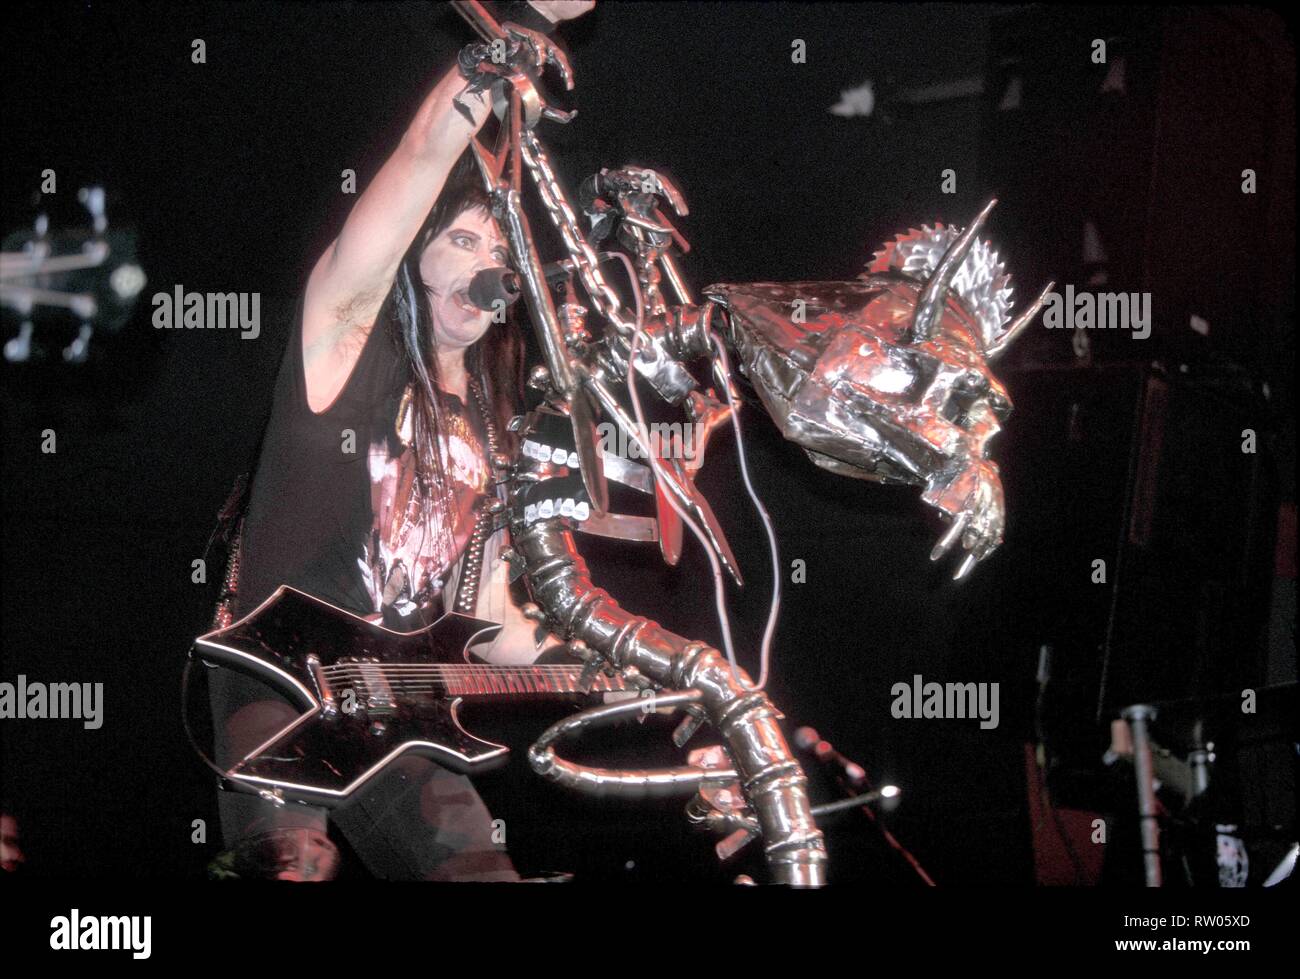 Sänger, Songwriter und Gitarrist Blackie Lawless der Heavy Metal Band W.A.S.P. ist dargestellt auf der Bühne während einer "live"-Konzert aussehen. Stockfoto